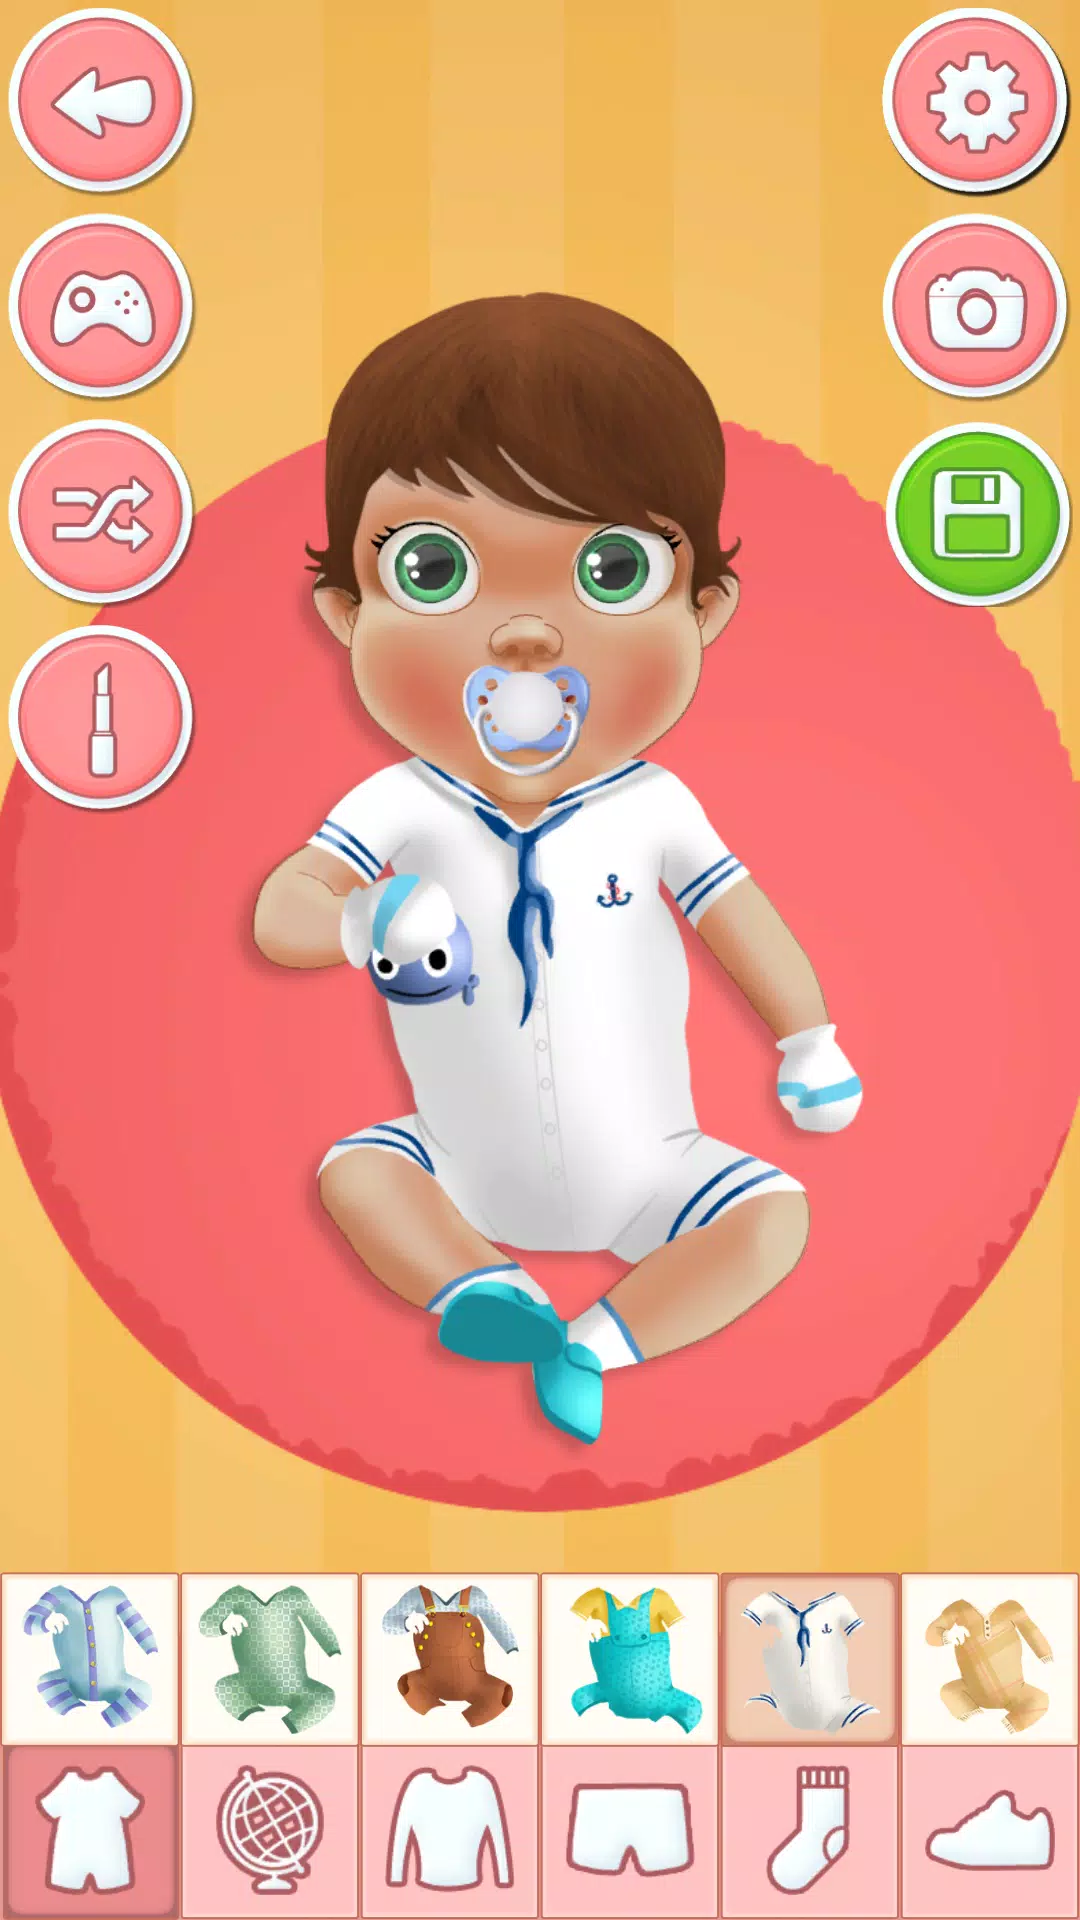 Descarga de APK de Juegos de Vestir a Bebes para Android